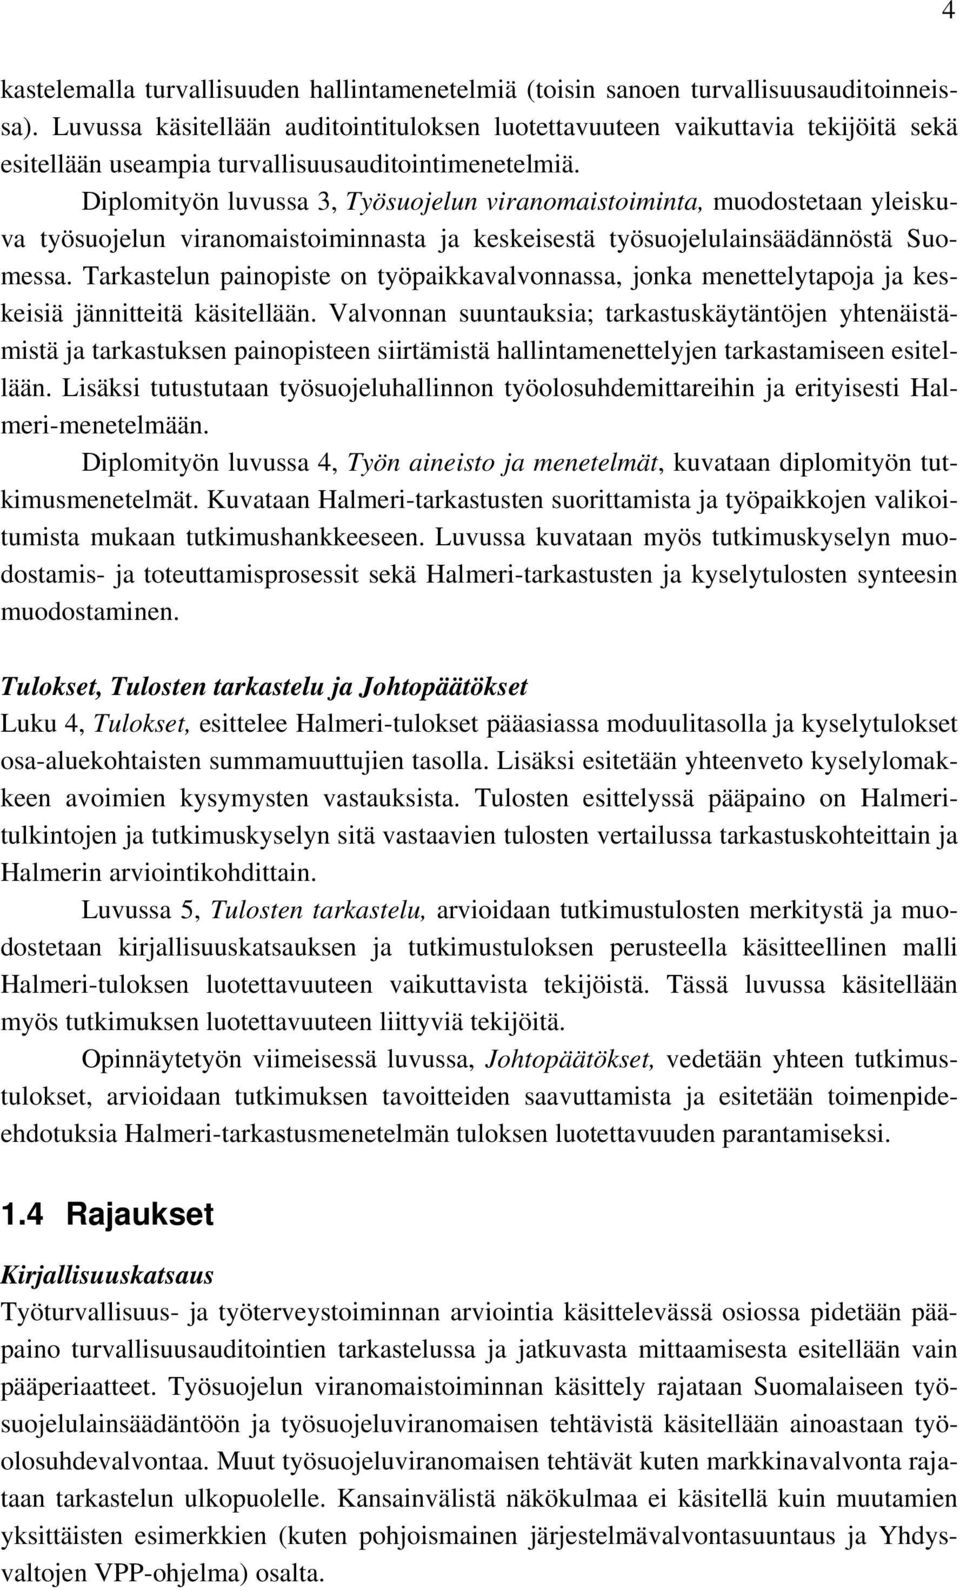 Diplomityön luvussa 3, Työsuojelun viranomaistoiminta, muodostetaan yleiskuva työsuojelun viranomaistoiminnasta ja keskeisestä työsuojelulainsäädännöstä Suomessa.